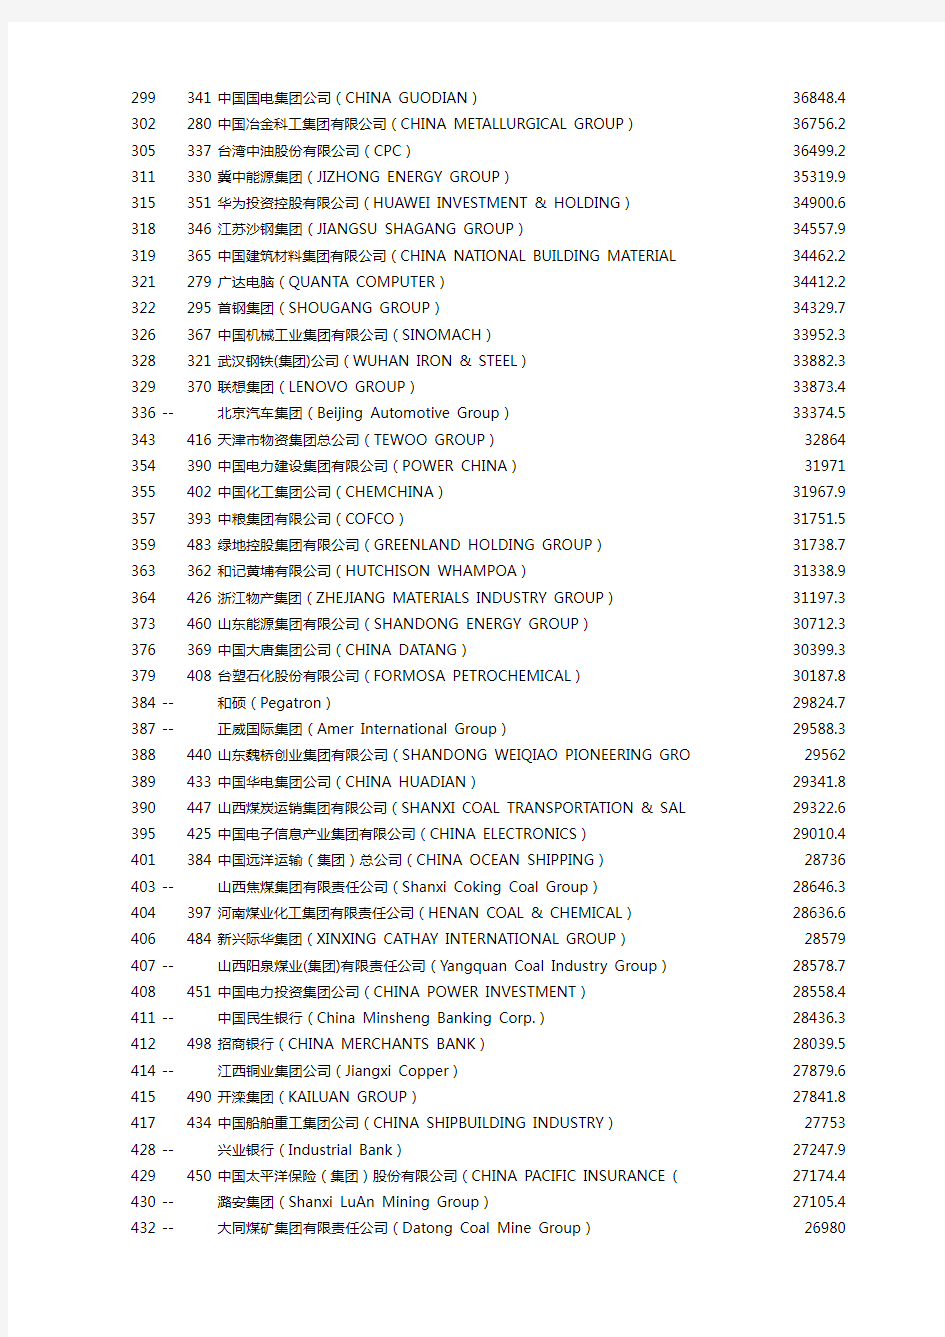 2013年世界500强中国企业